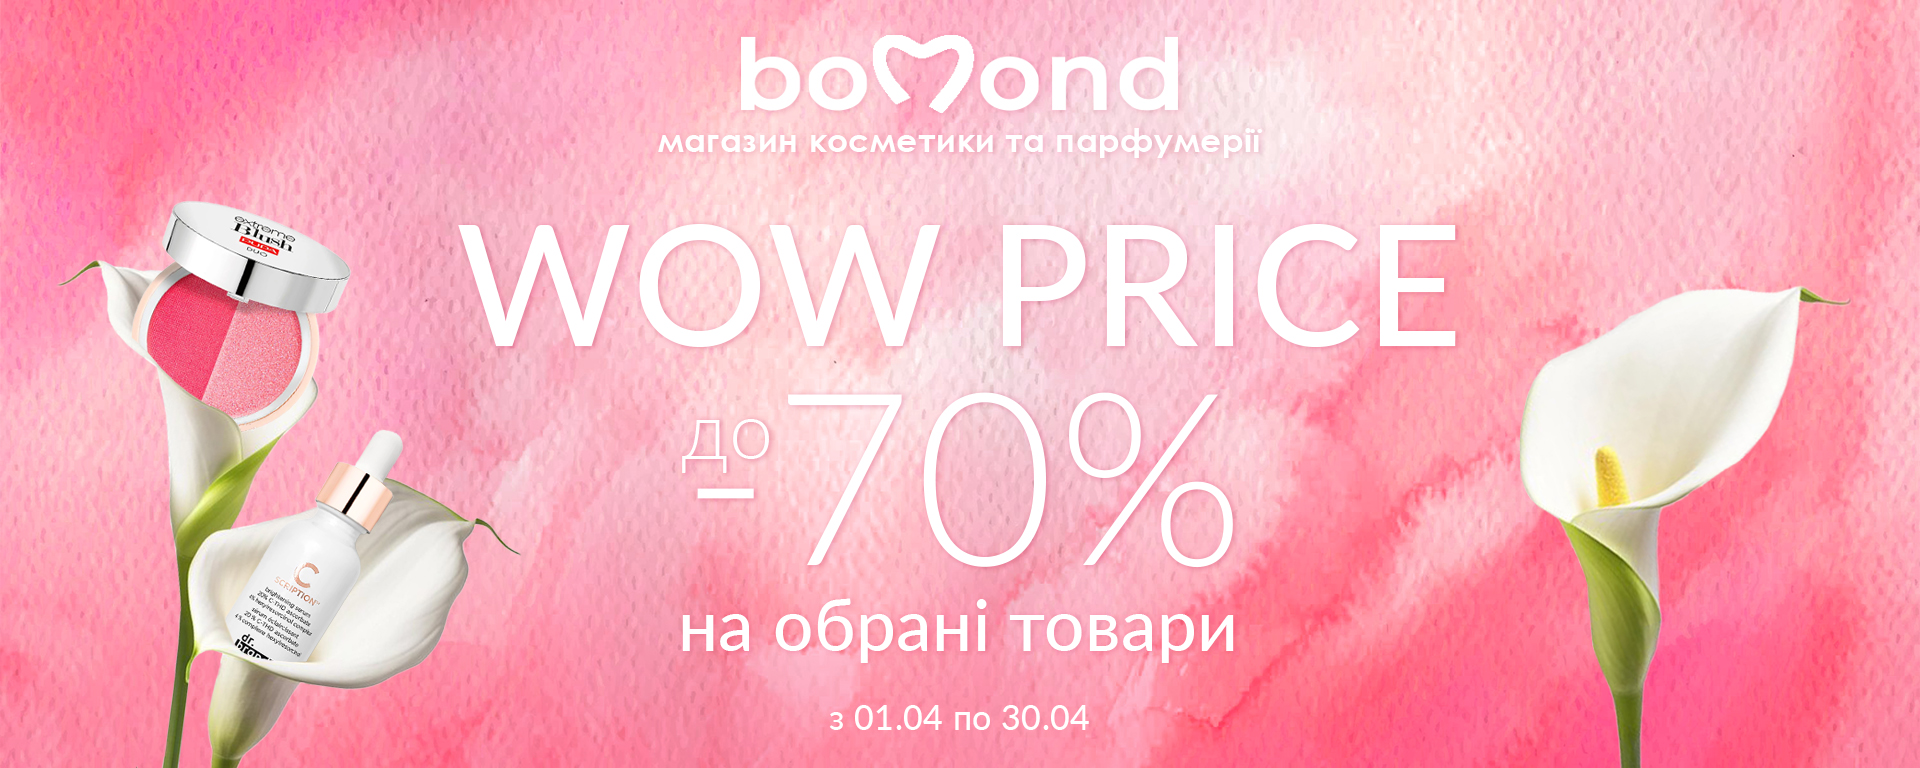 WOW Price в Bomond знижки до -70%